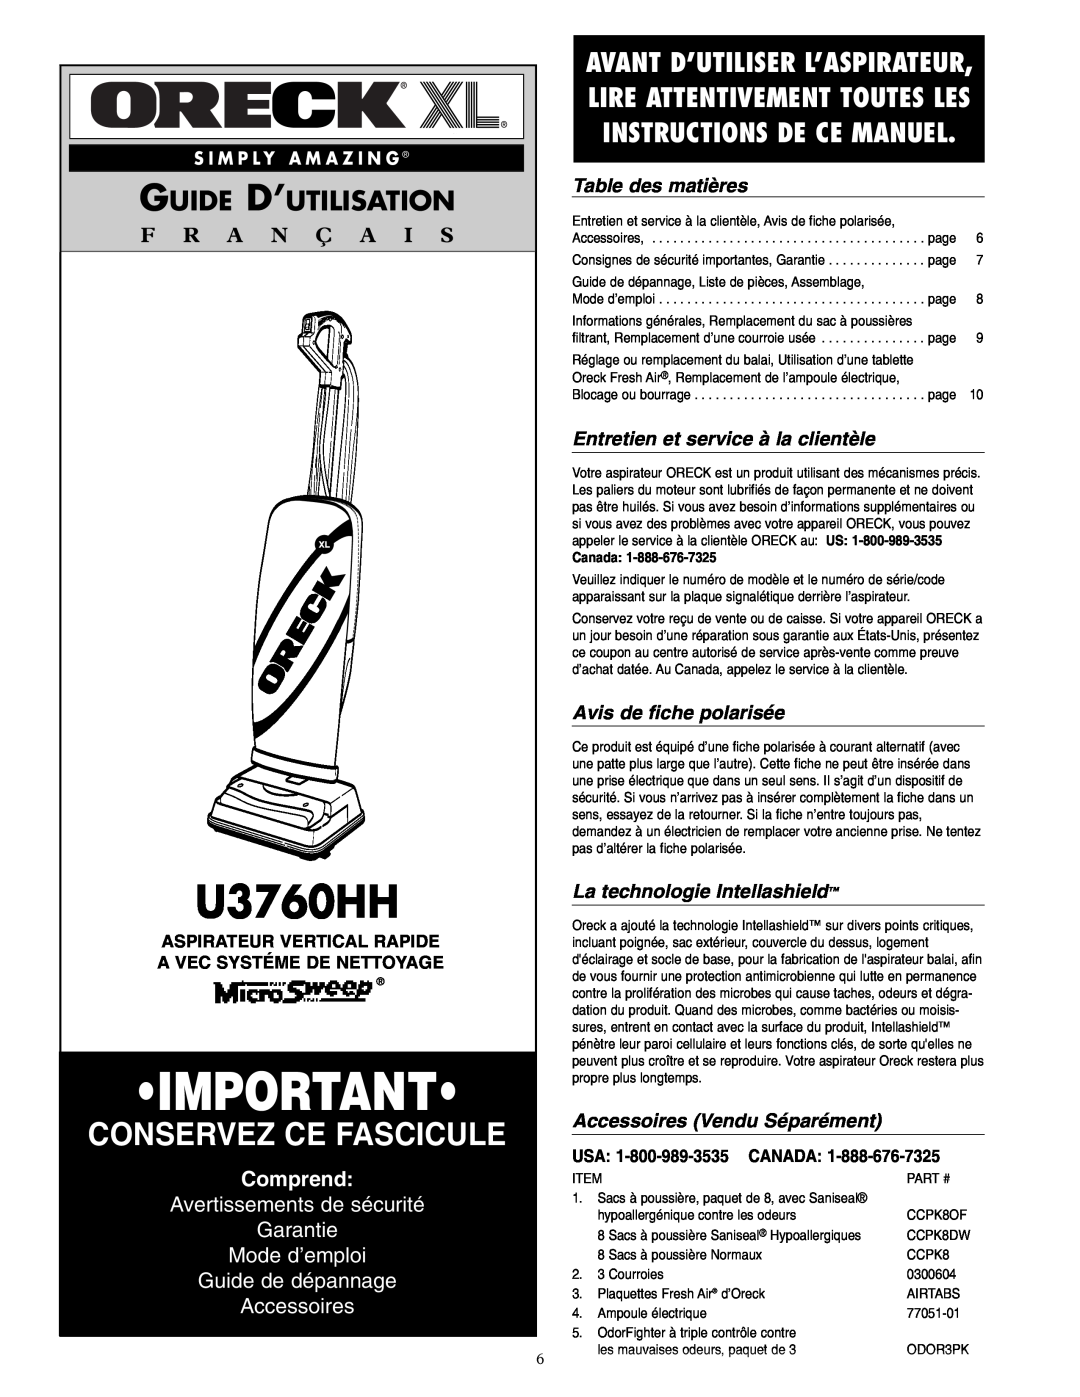 Oreck U3760HH Conservez Ce Fascicule, Guide D’Utilisation, F R A N Ç A I S, Comprend, Guide de dépannage Accessoires 